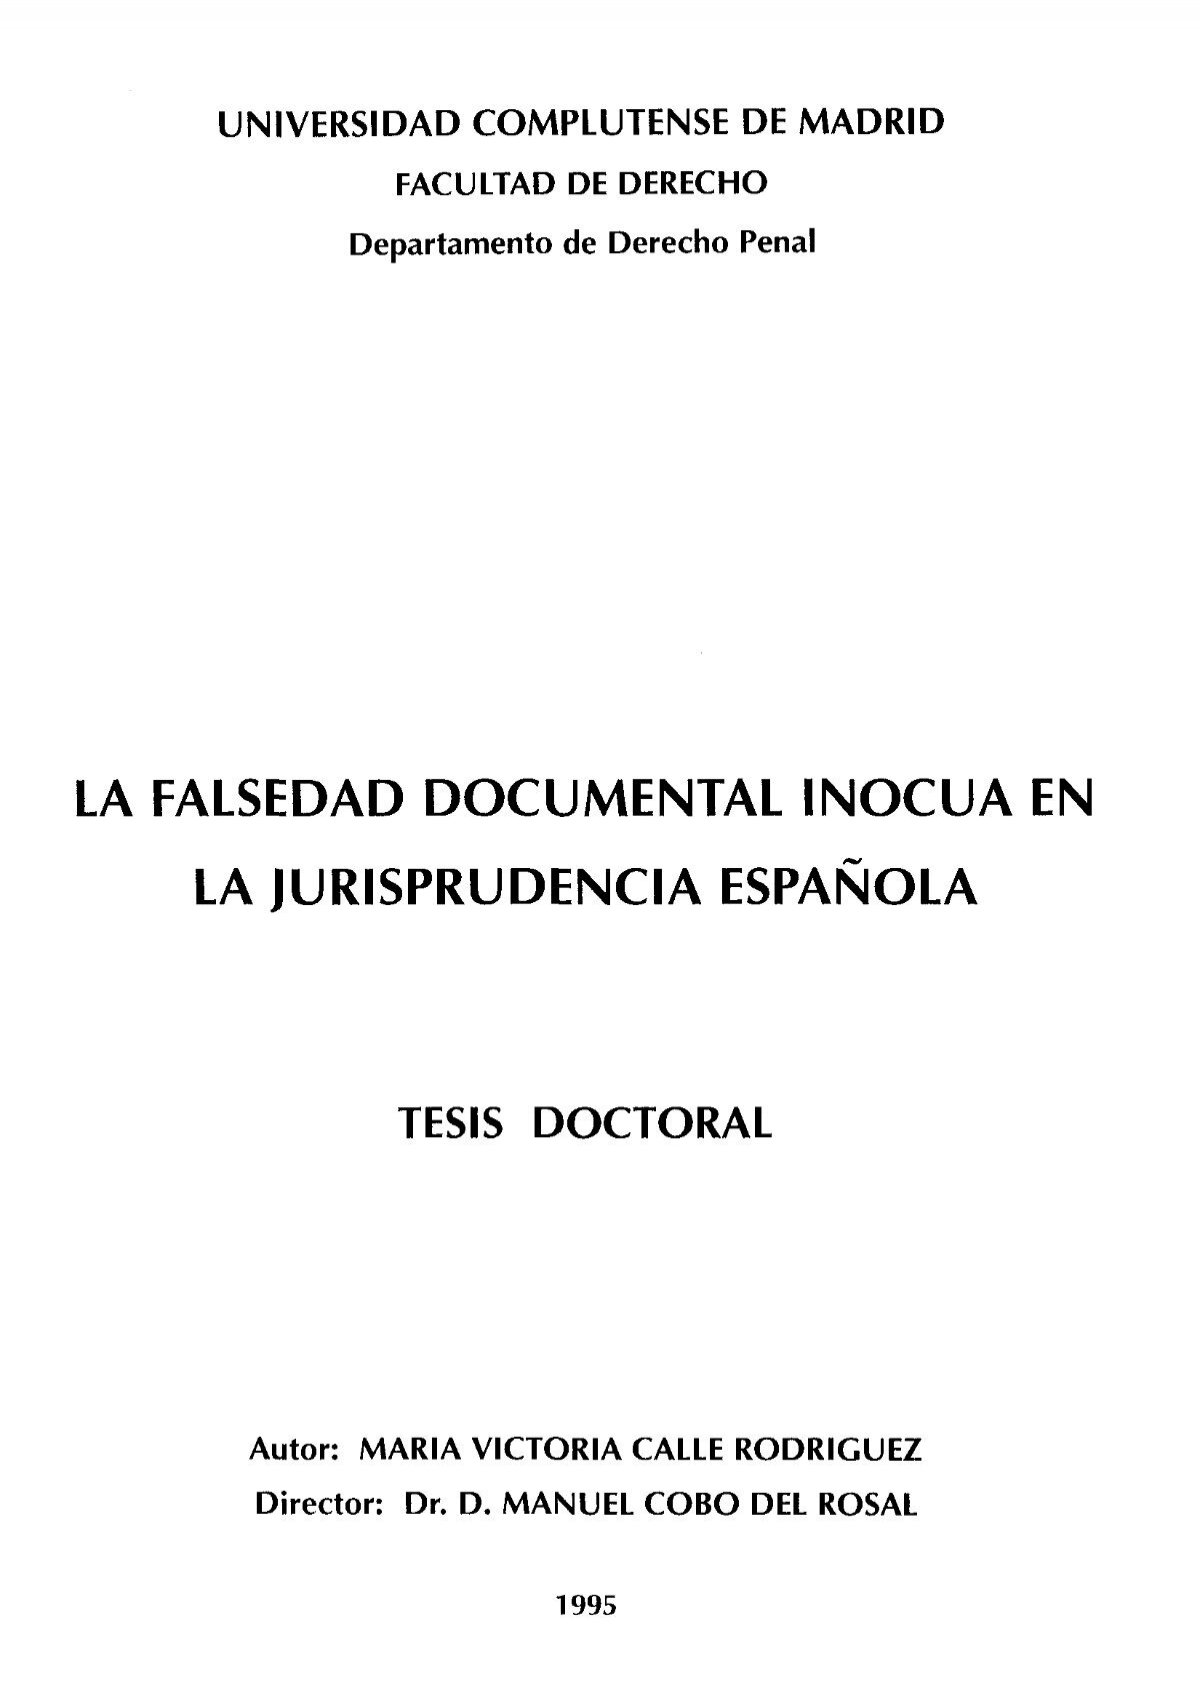 la falsedad documental inocua en la jurisprudencia española